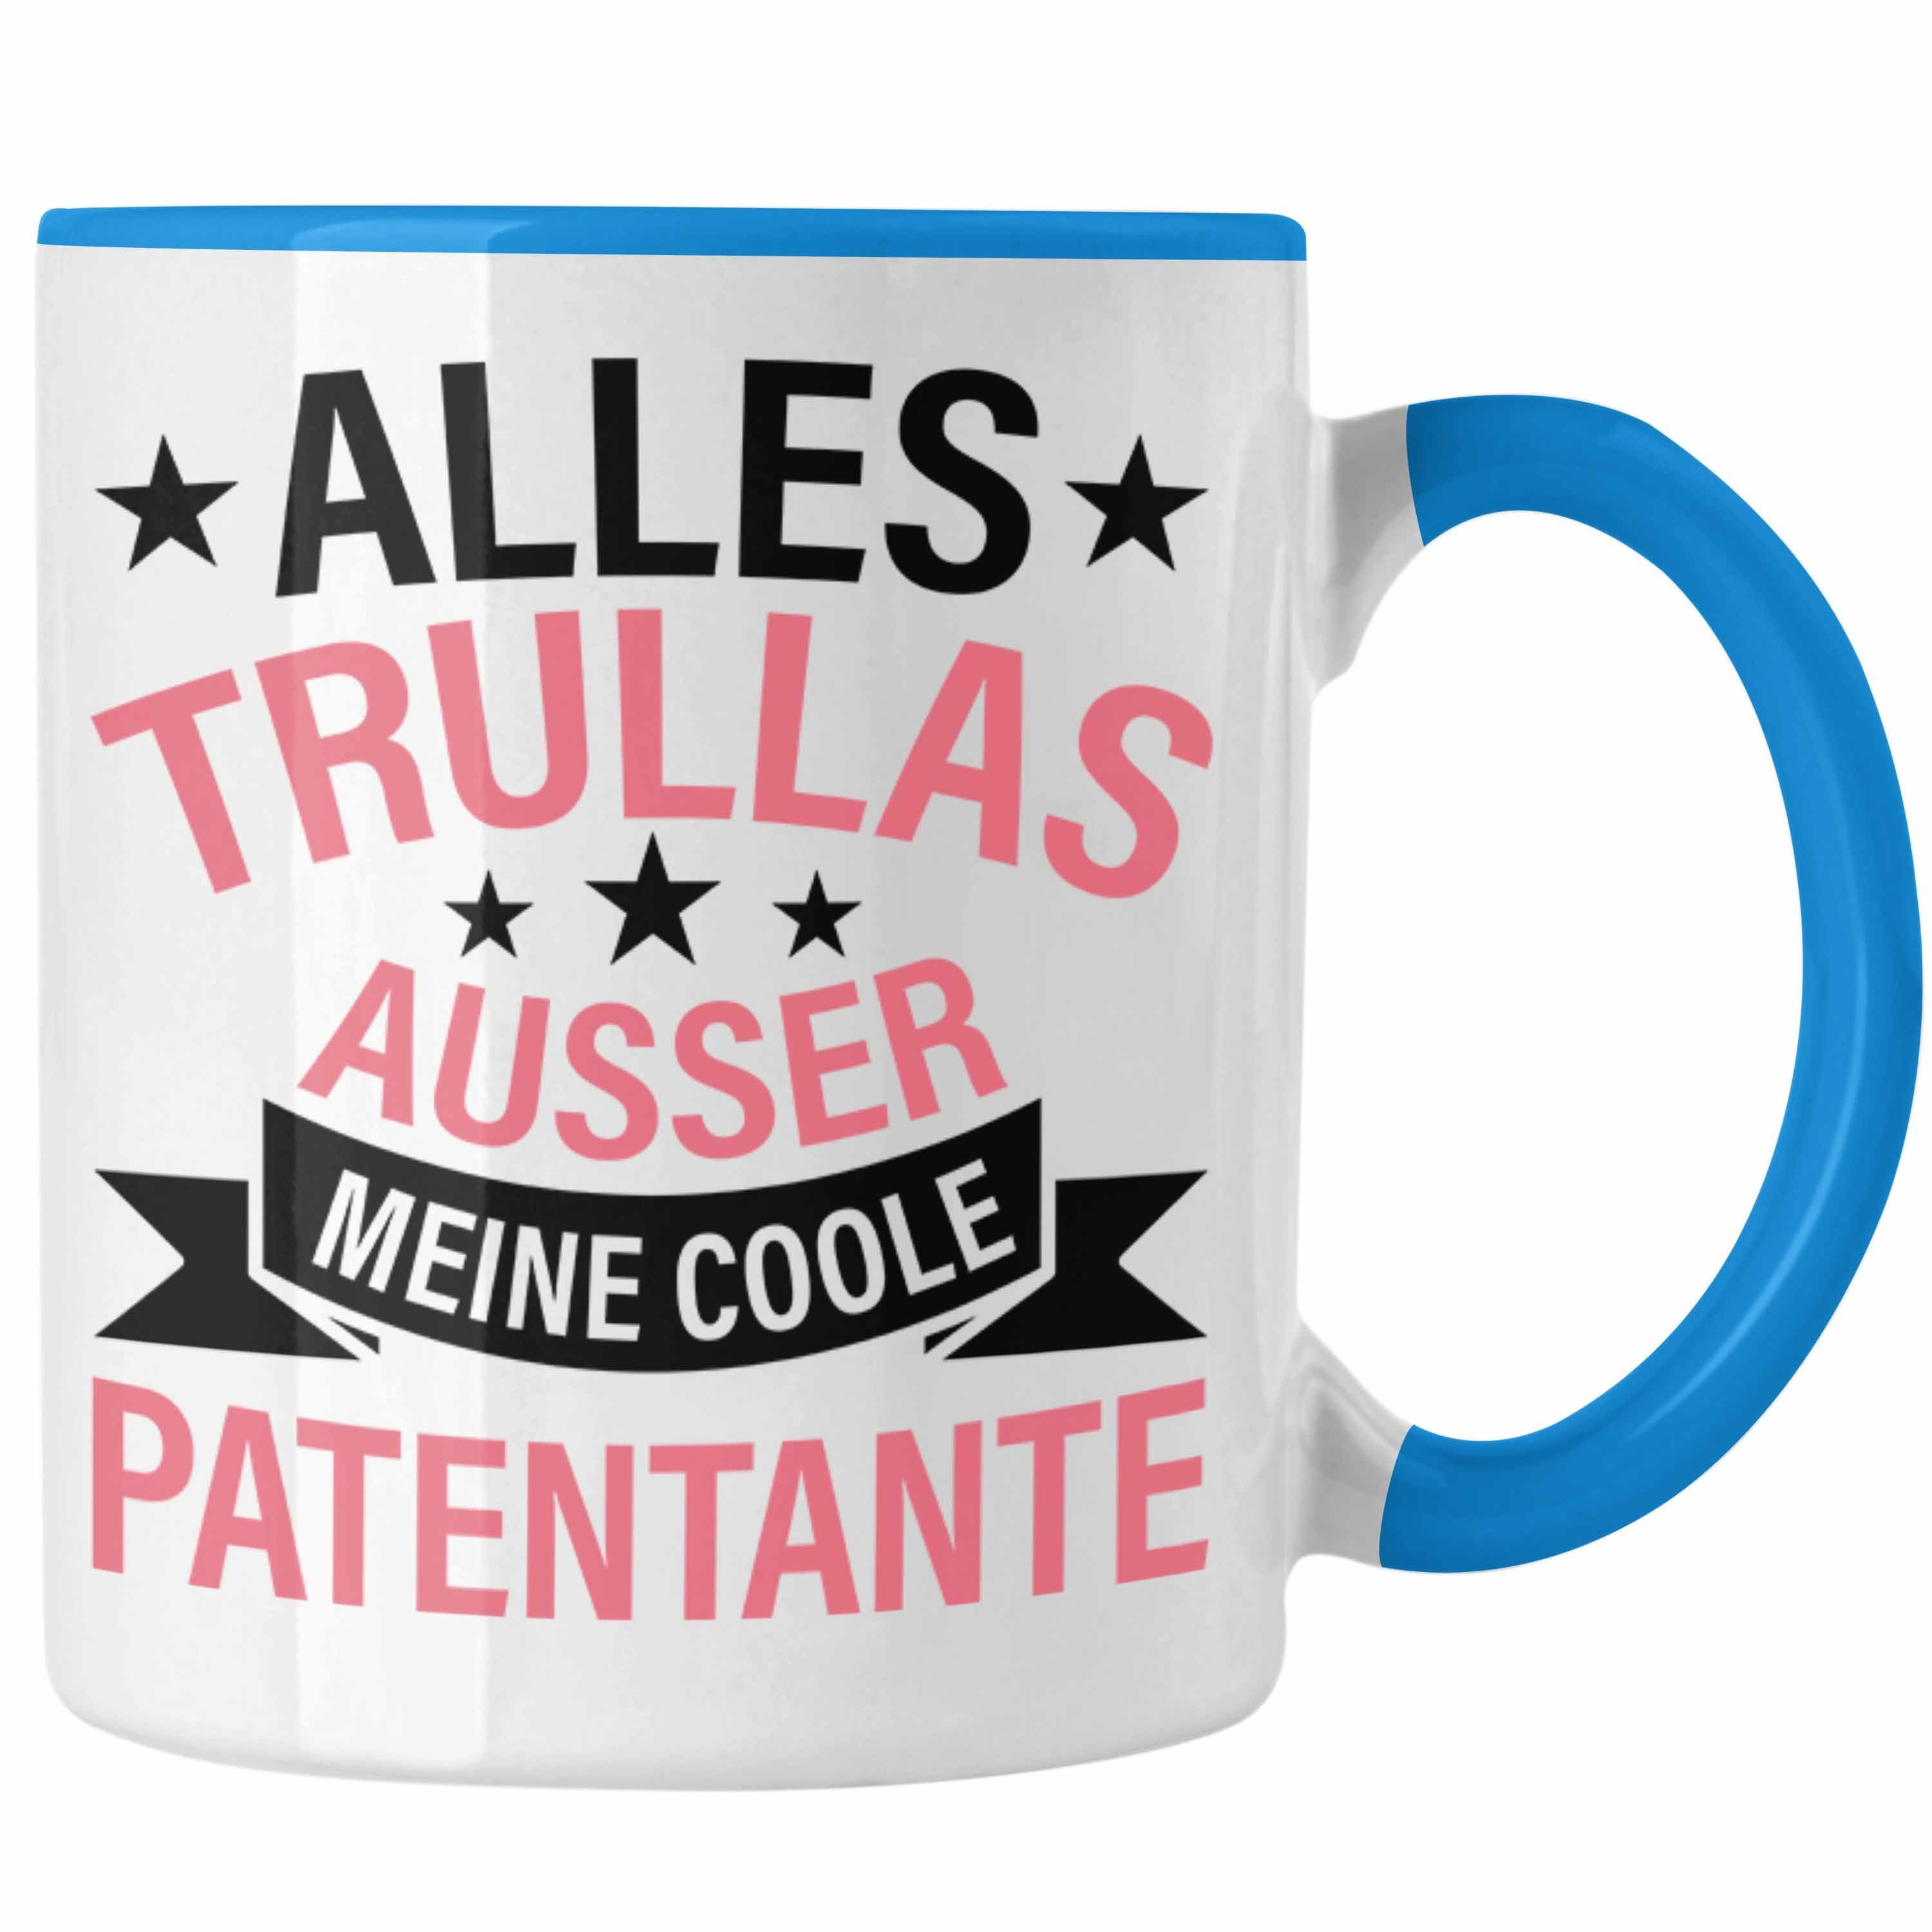 Patentante Trendation Alles Geschenk Geschenkidee - Tasse Tasse Trullas Blau Geburtstag Trendation Lustig